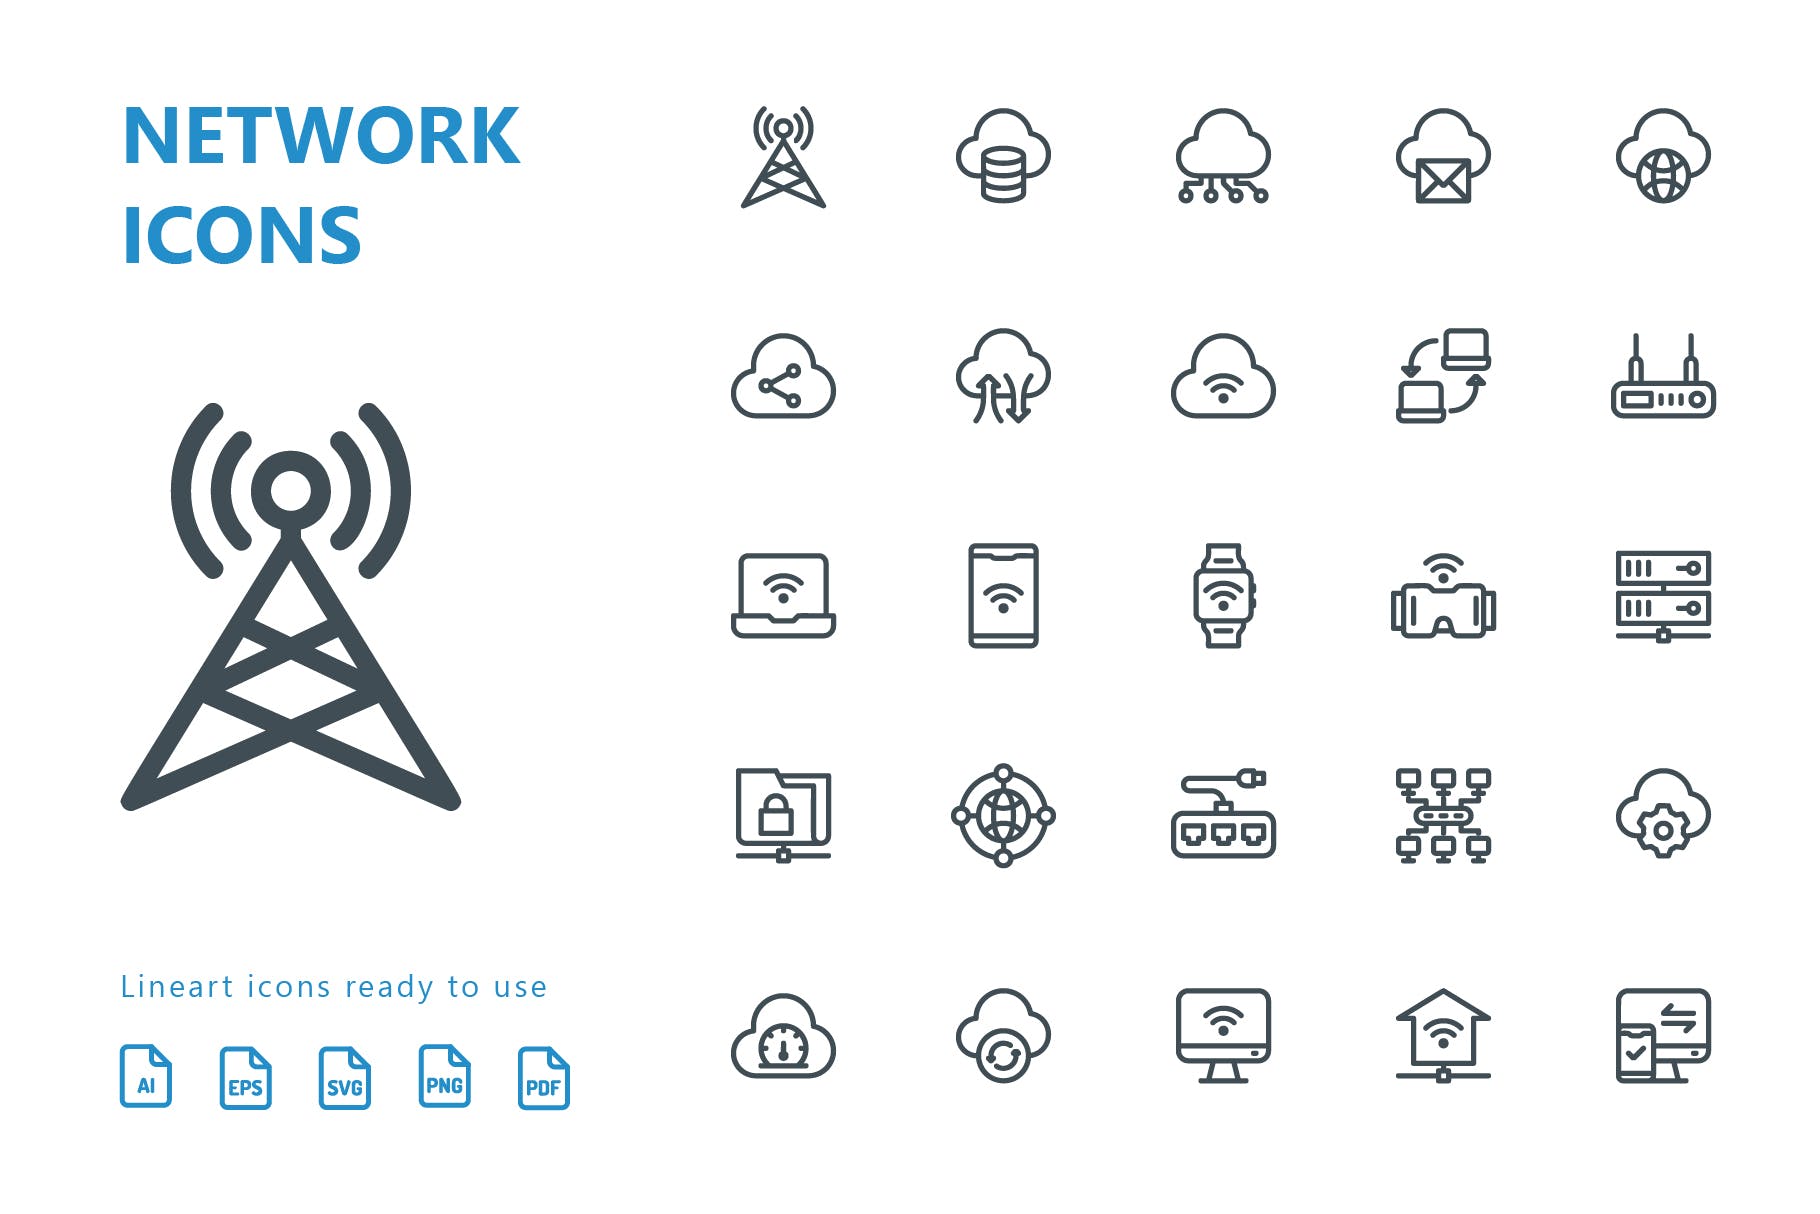 网络科技主题矢量线性蚂蚁素材精选图标 Network Lineart Icons插图(1)